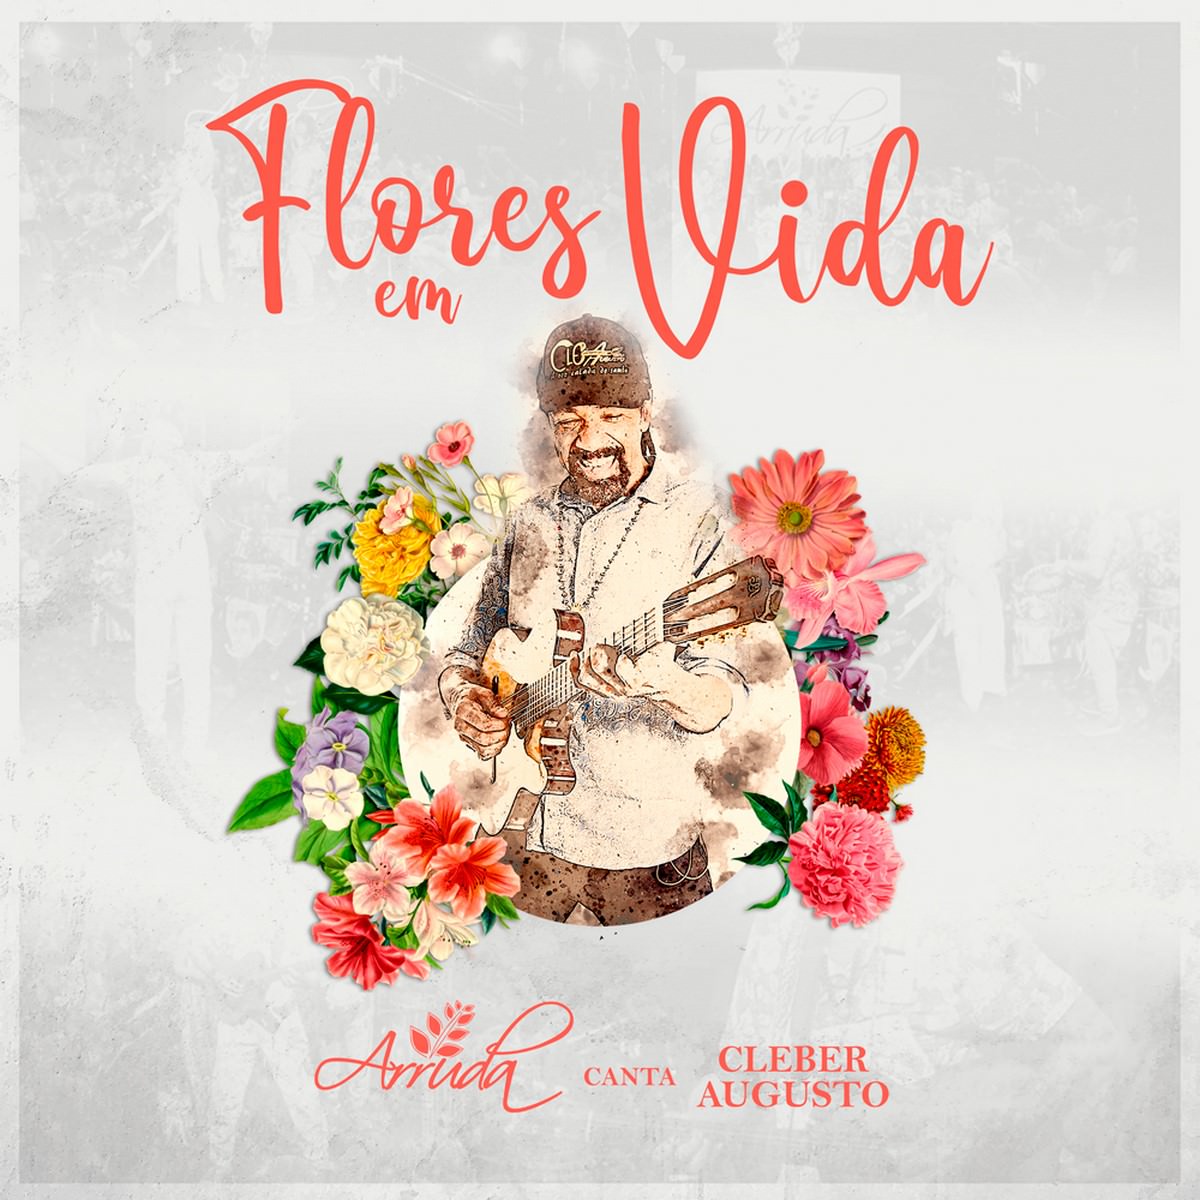 Lançamento do álbum "Flores em Vida" do Grupo Arruda, capa. Divulgação.